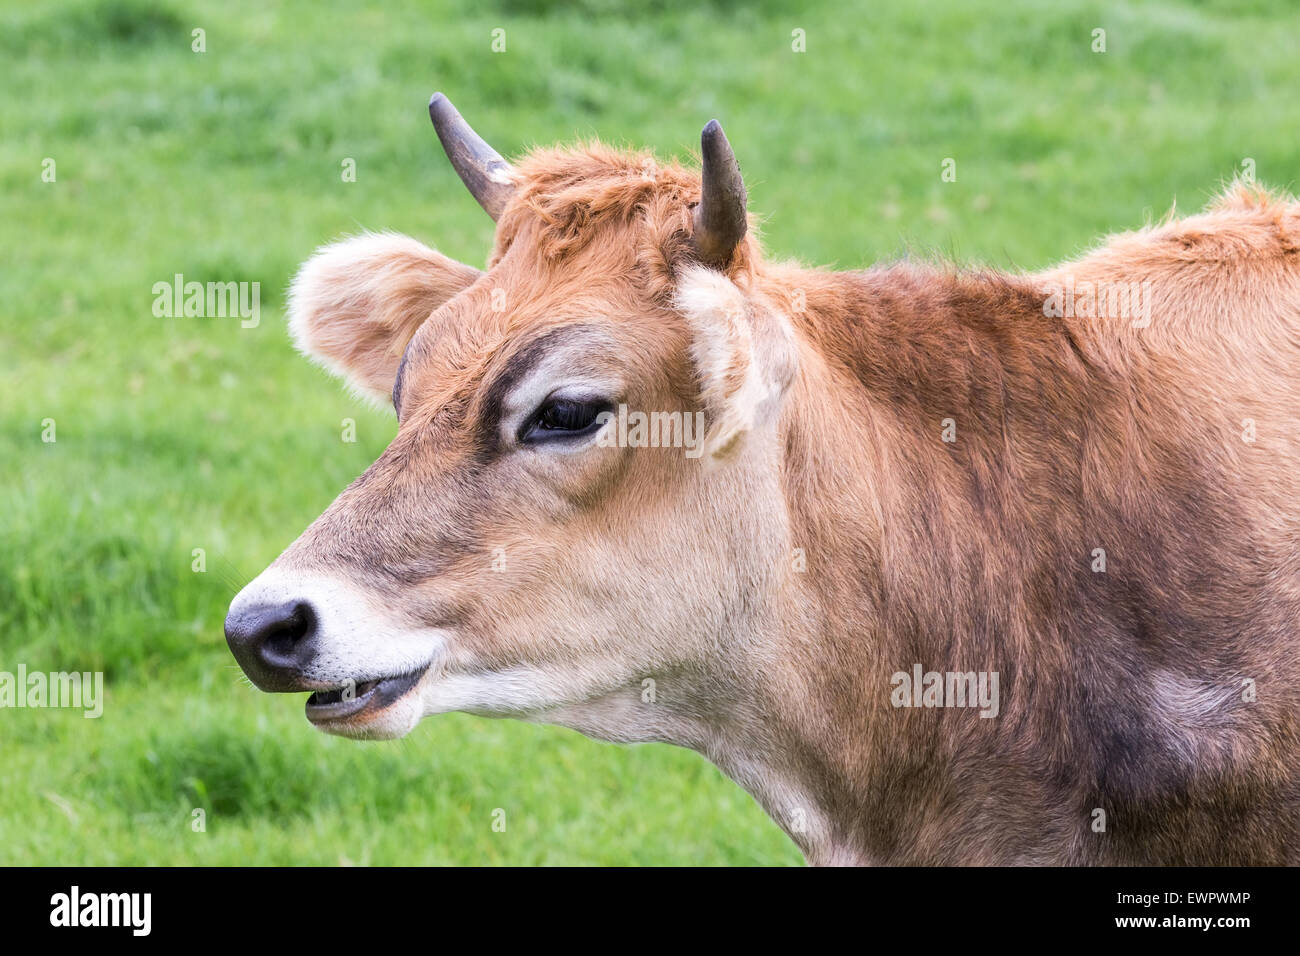 Porträt Kopf des gehörnten braune Kuh auf grüner Wiese Stockfoto